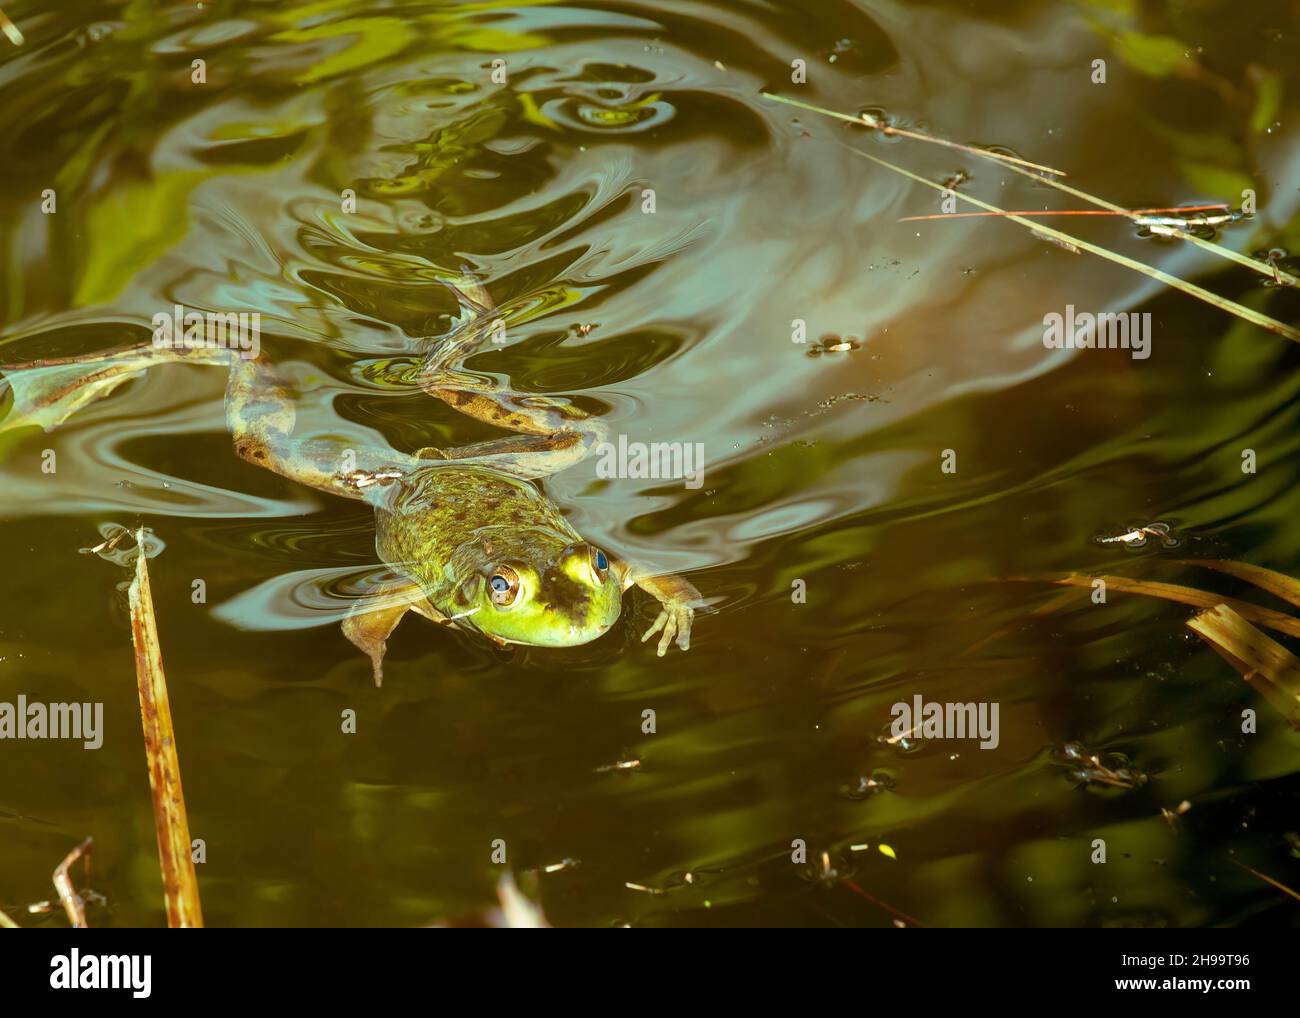 Una rana verde nadando en un pantano. Foto de stock